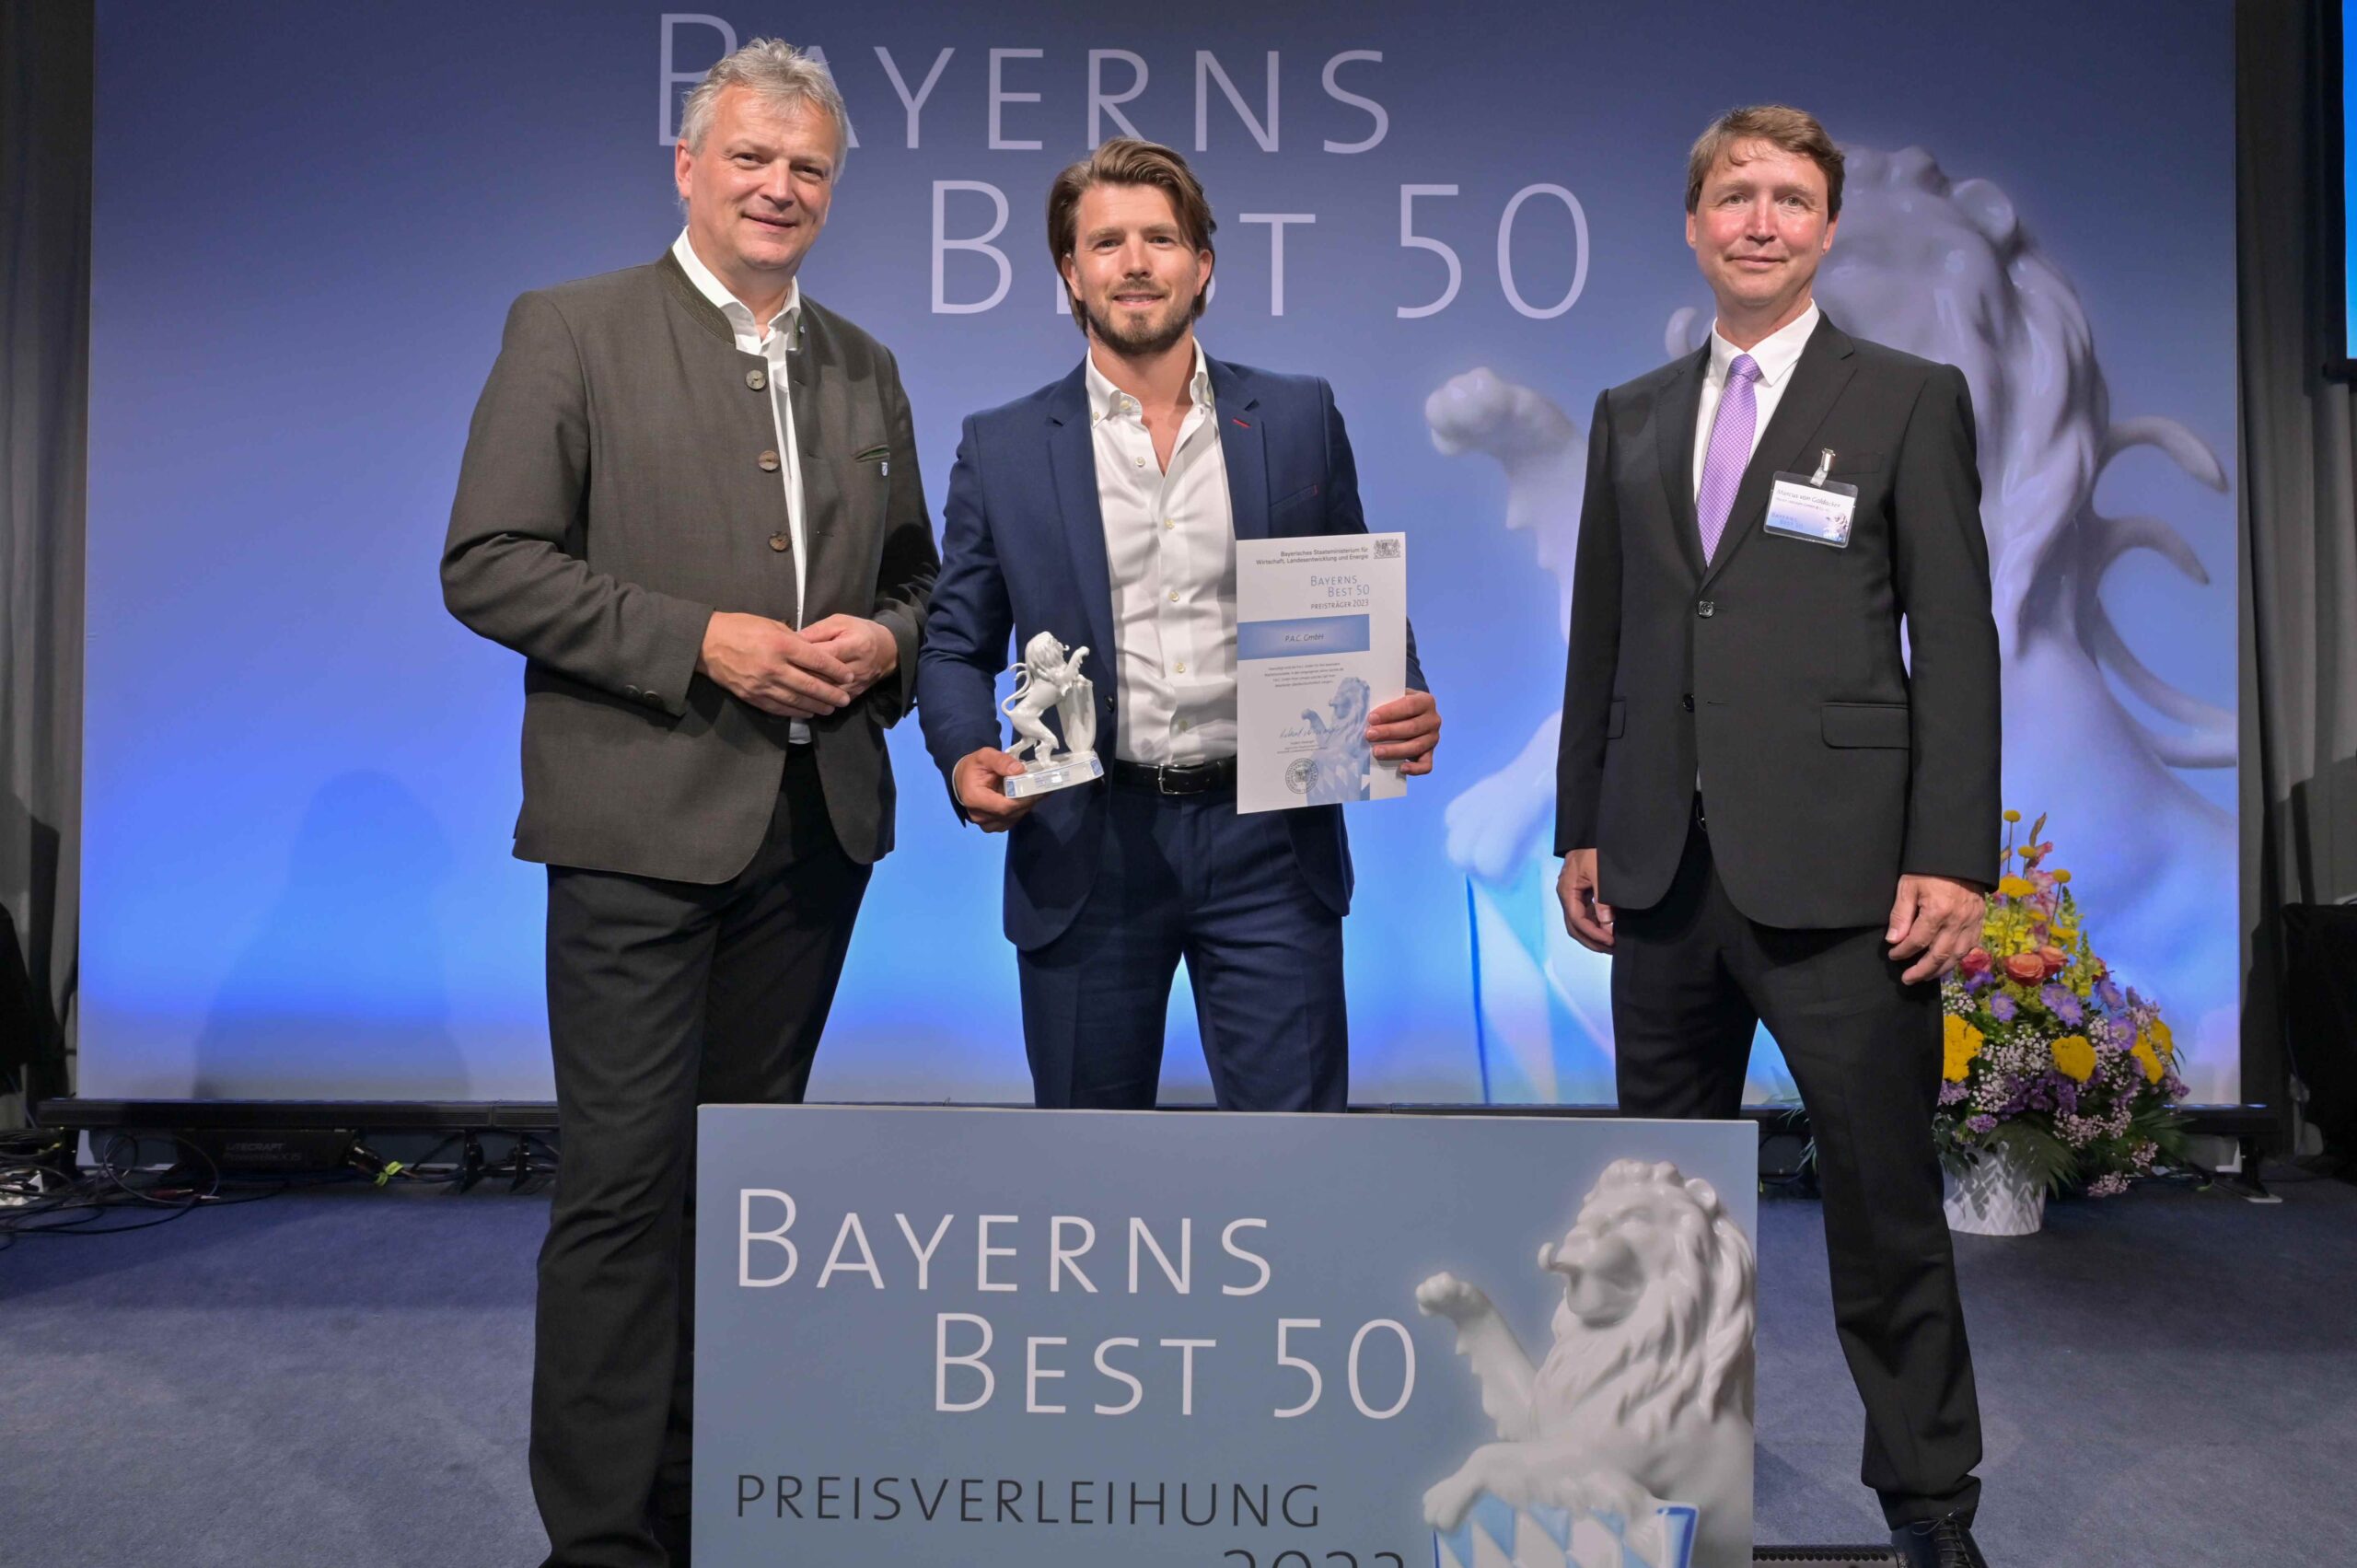 Preisverleihung Bayerns Best 50 an P.A.C. - Lukas Weimann